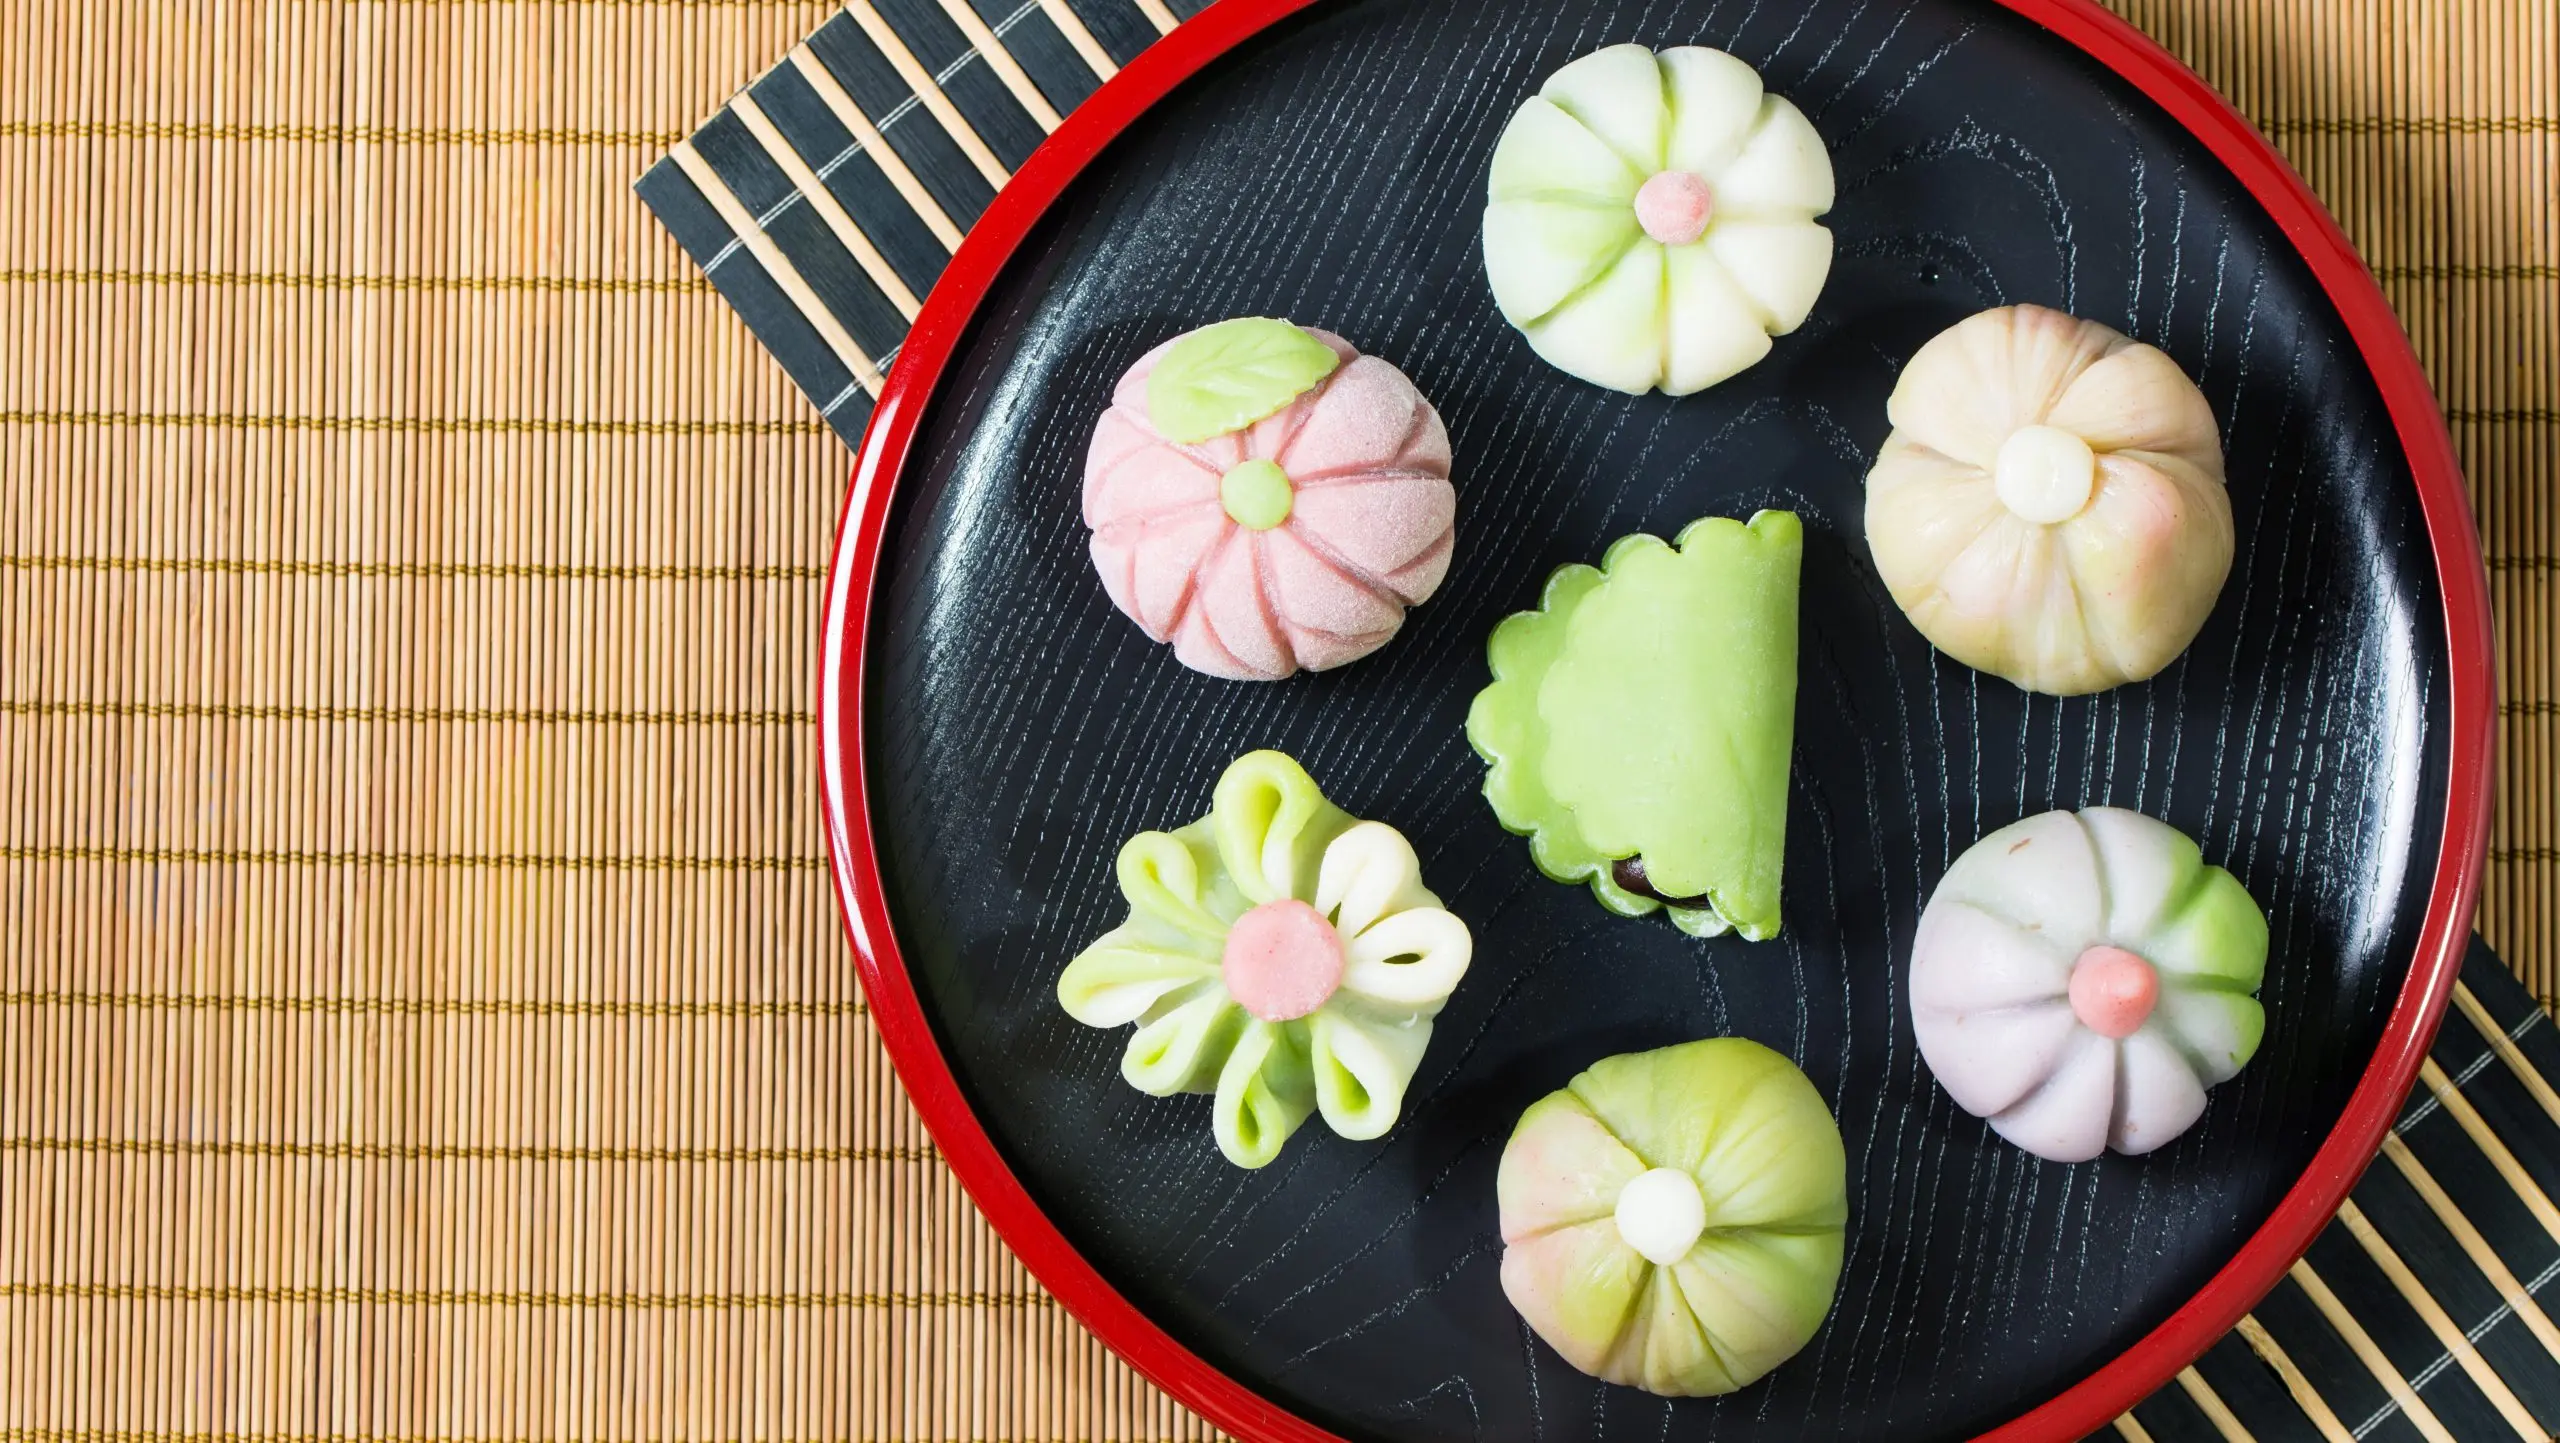 Les wagashi, ces petites pâtisseries japonaises qui fleurissent sur Instagram